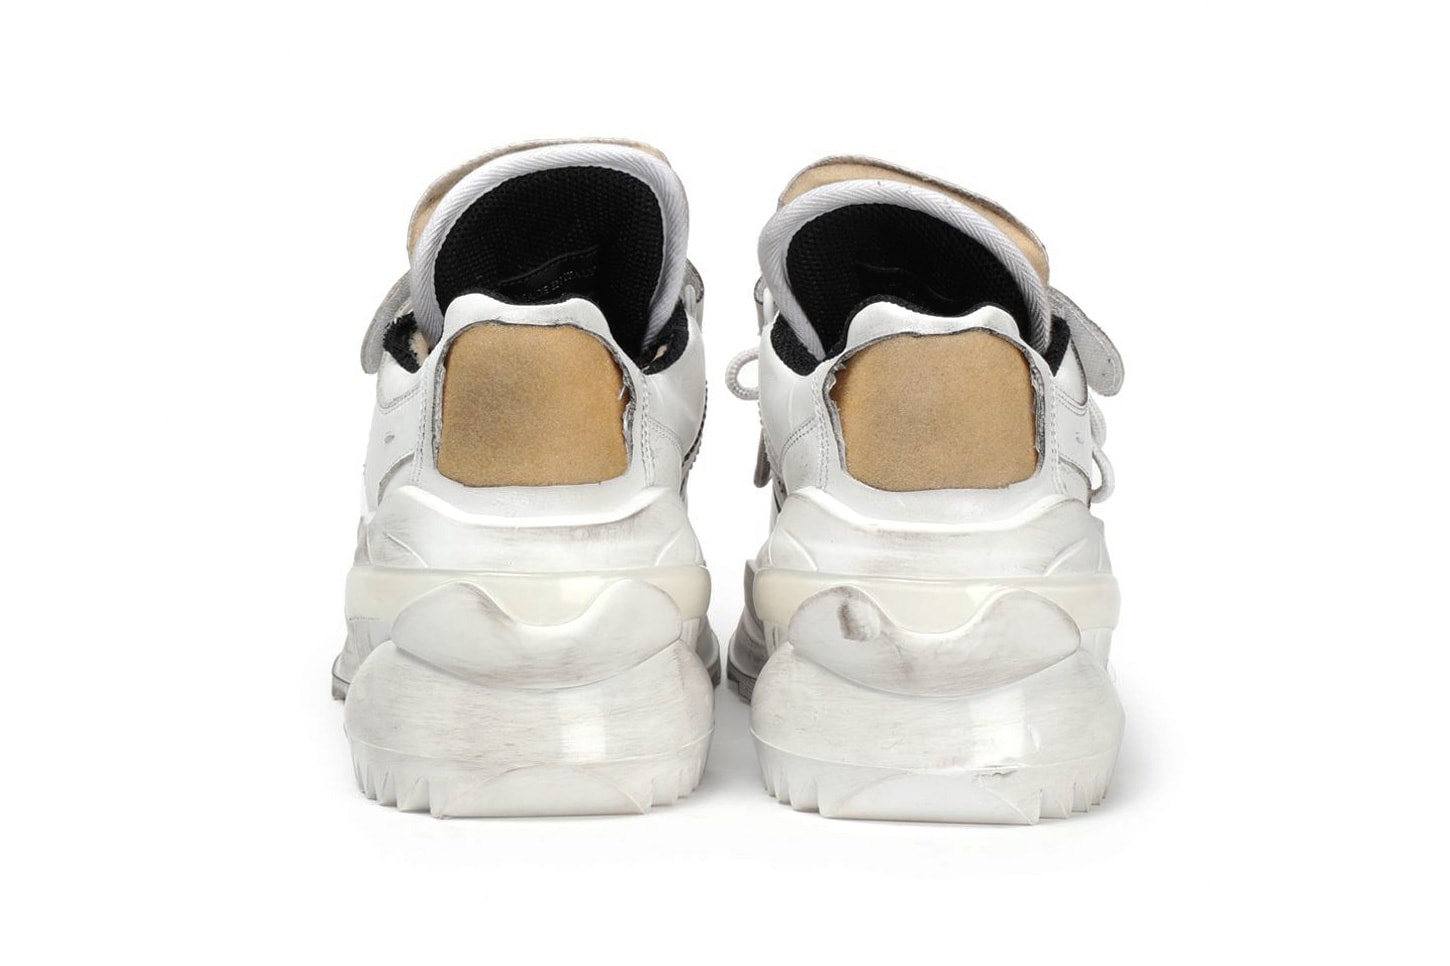 Maison Margiela Retro Fit Low Sneaker Release america silver white black colorways price date info purchase buy online chunky sneaker dad shoe trend menswear streetwear